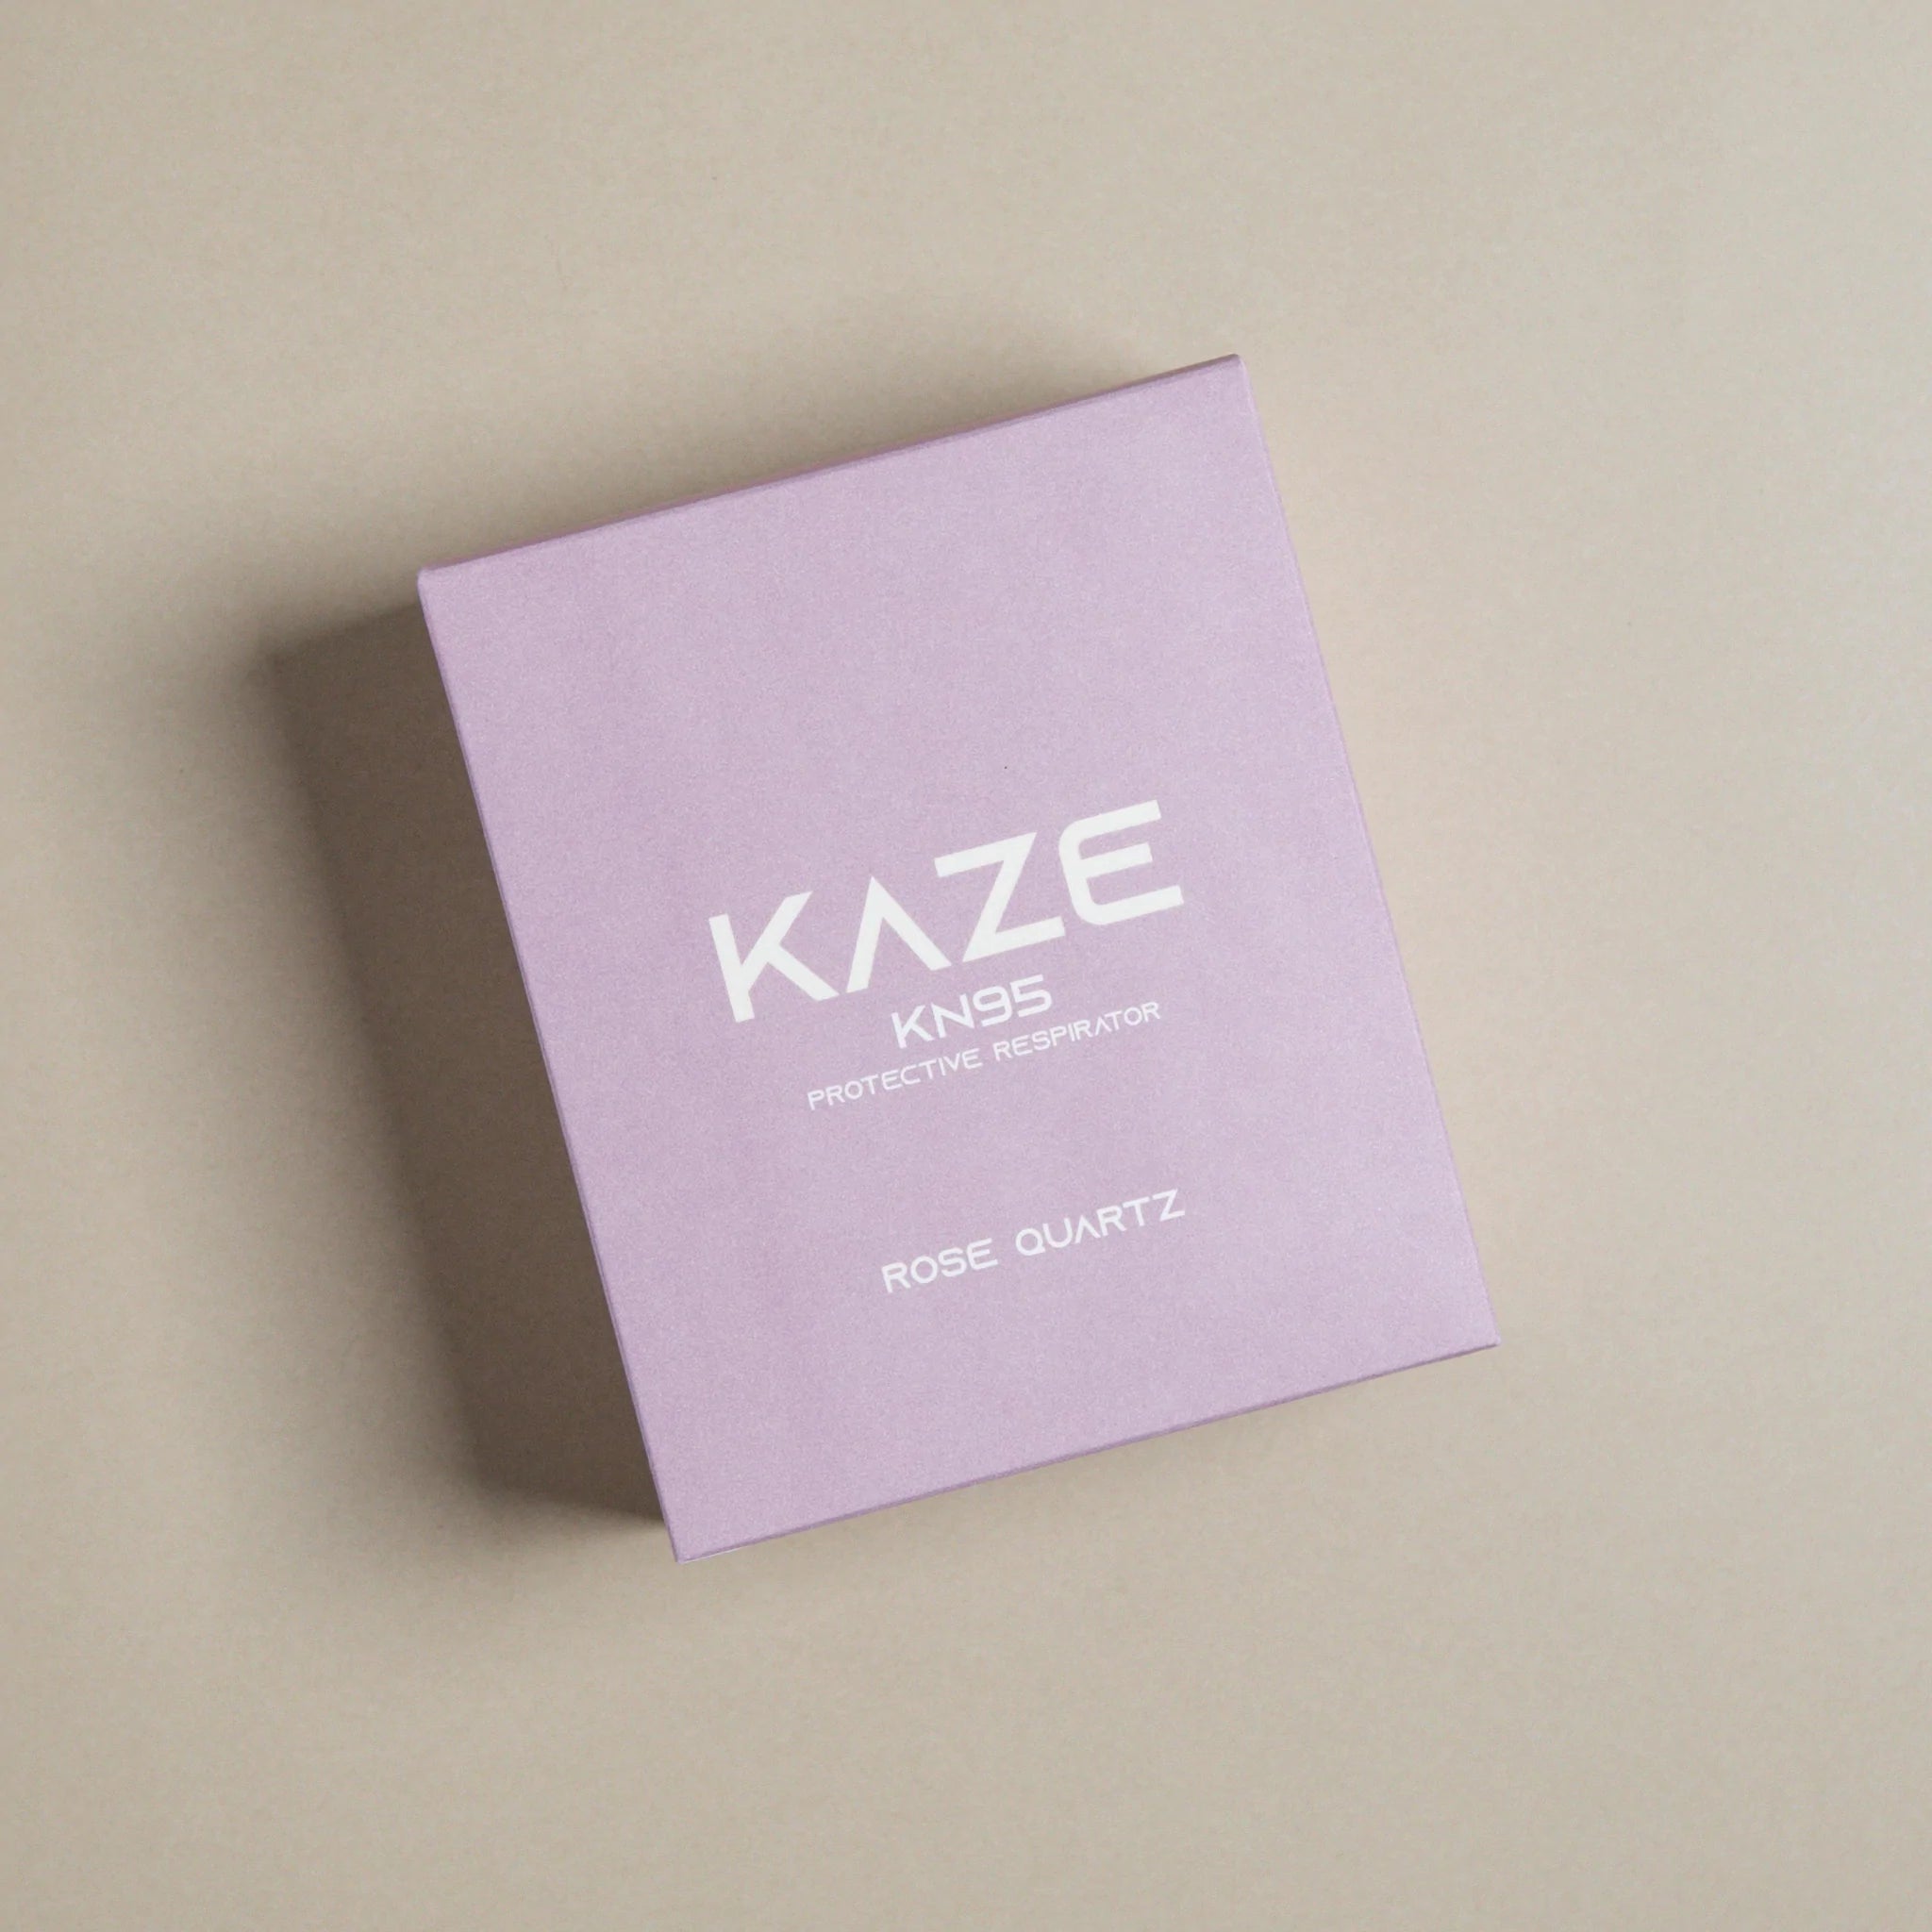 KAZE Mask- Rose Quartz